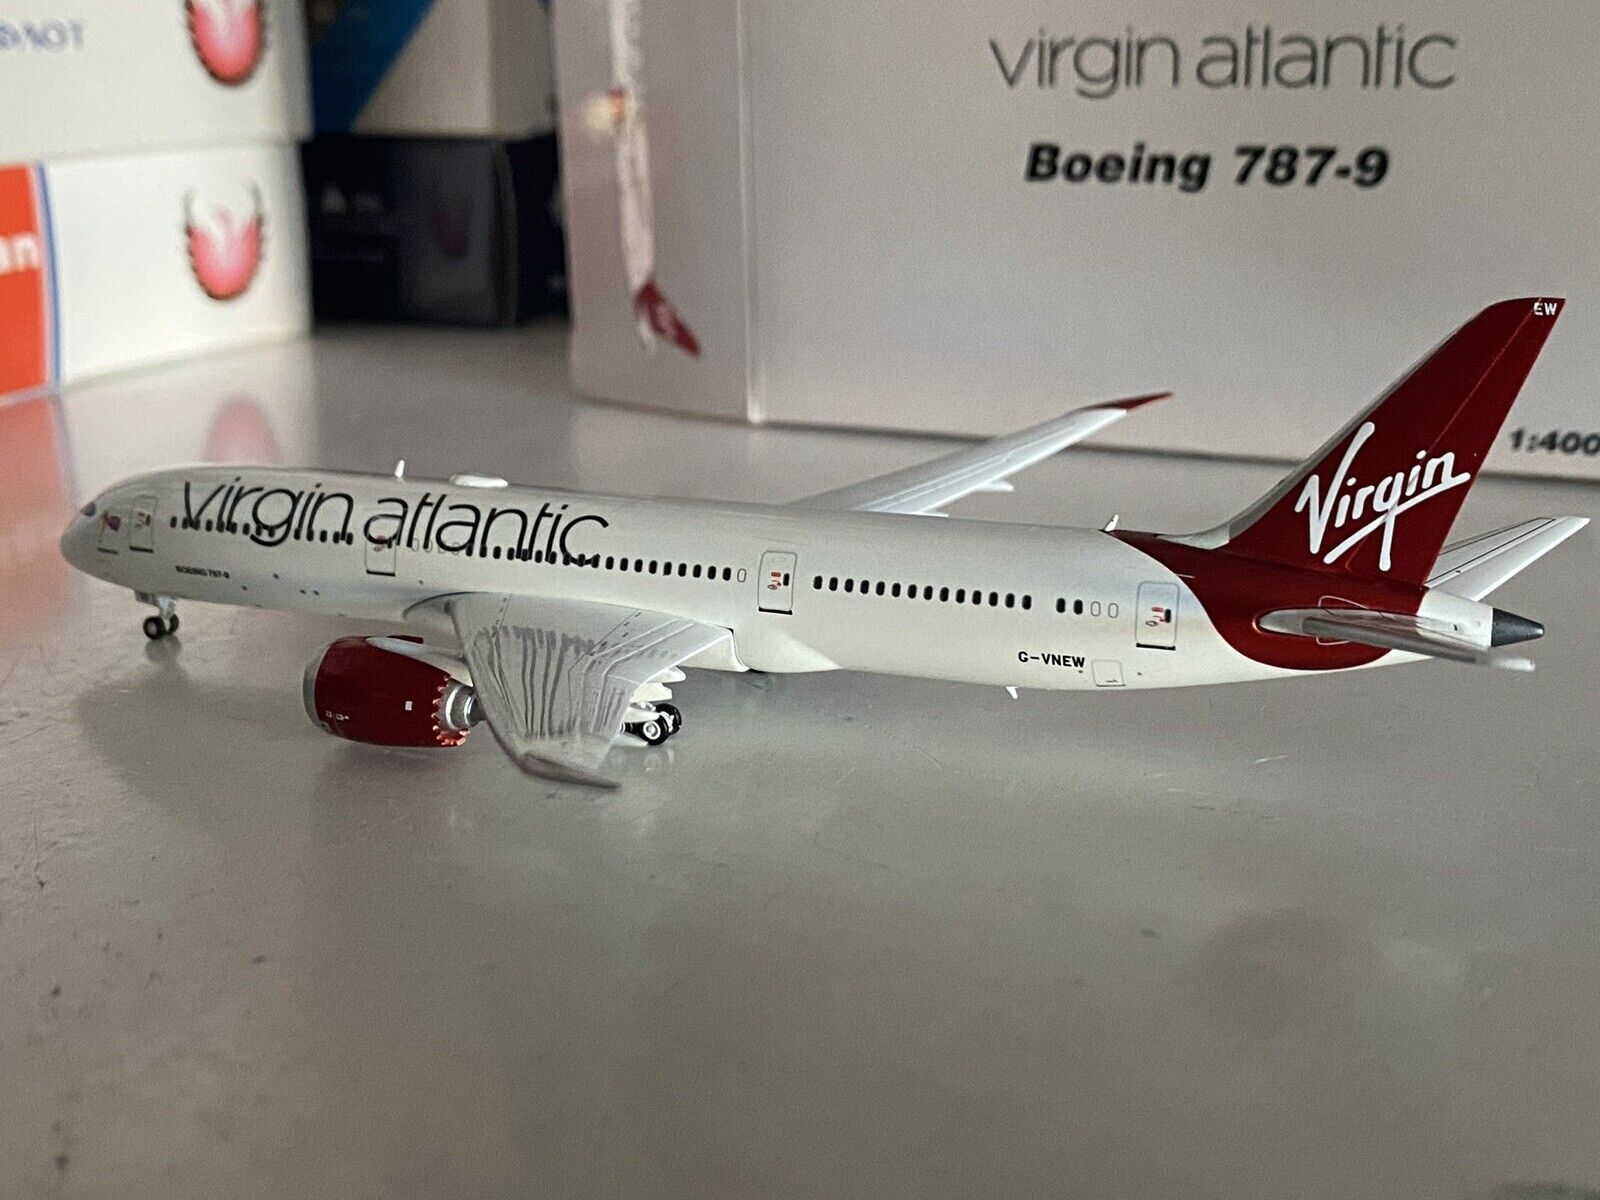 Gemini Jets Virgin Atlantic Airways Boeing 787-9 1:400 G-VNEW GJVIR1444